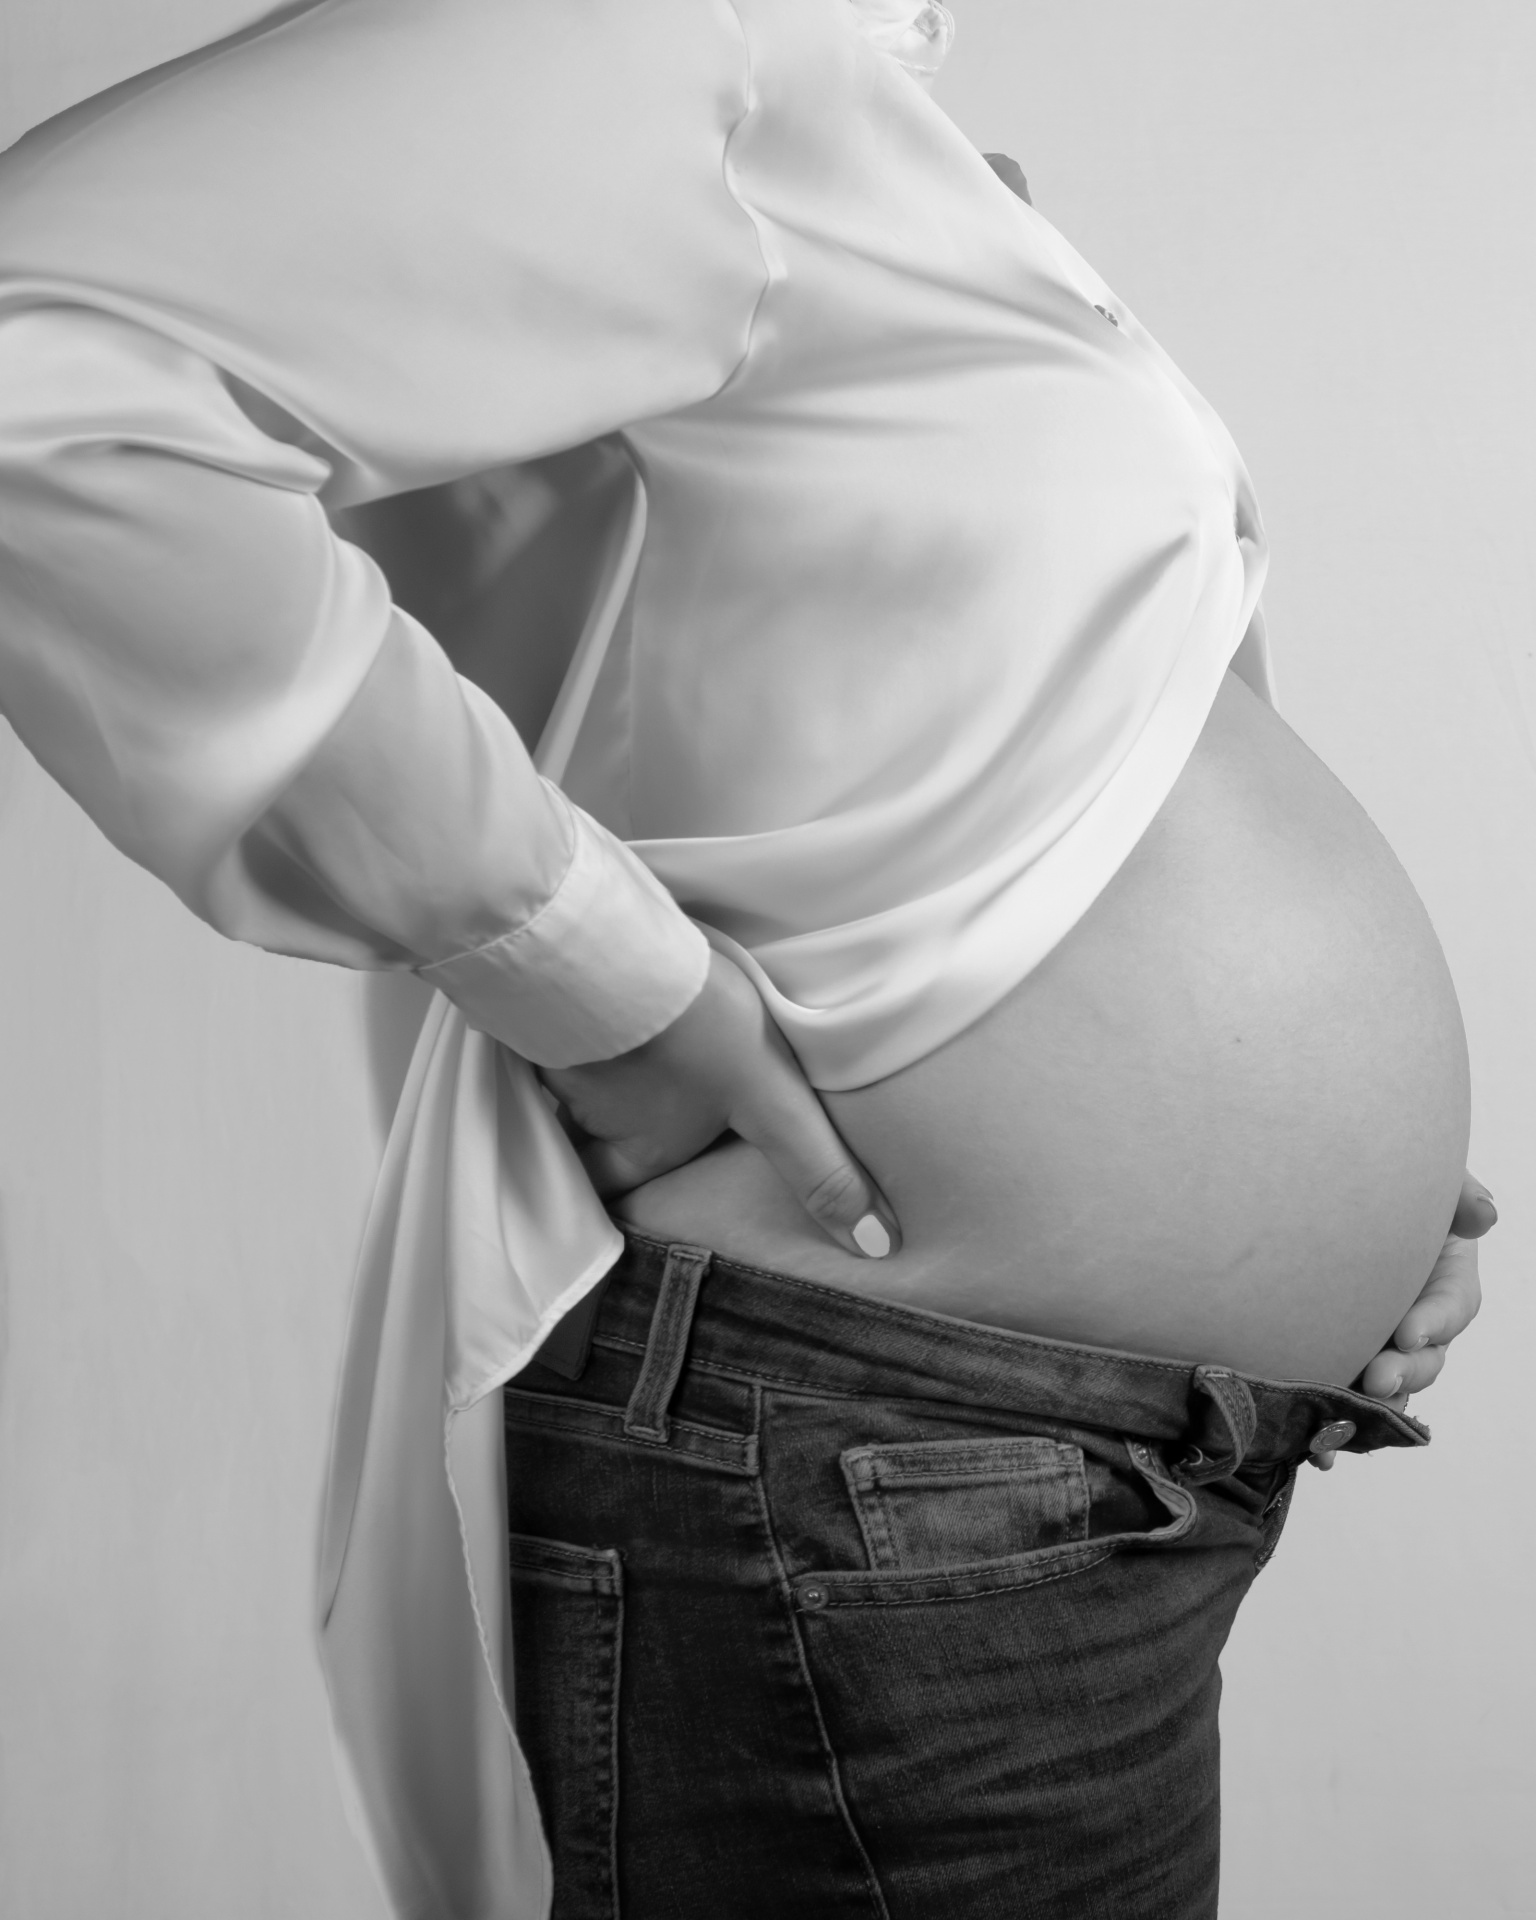 Seguridad vial y Embarazado: Lo debes saber para viajar con toda seguridad 